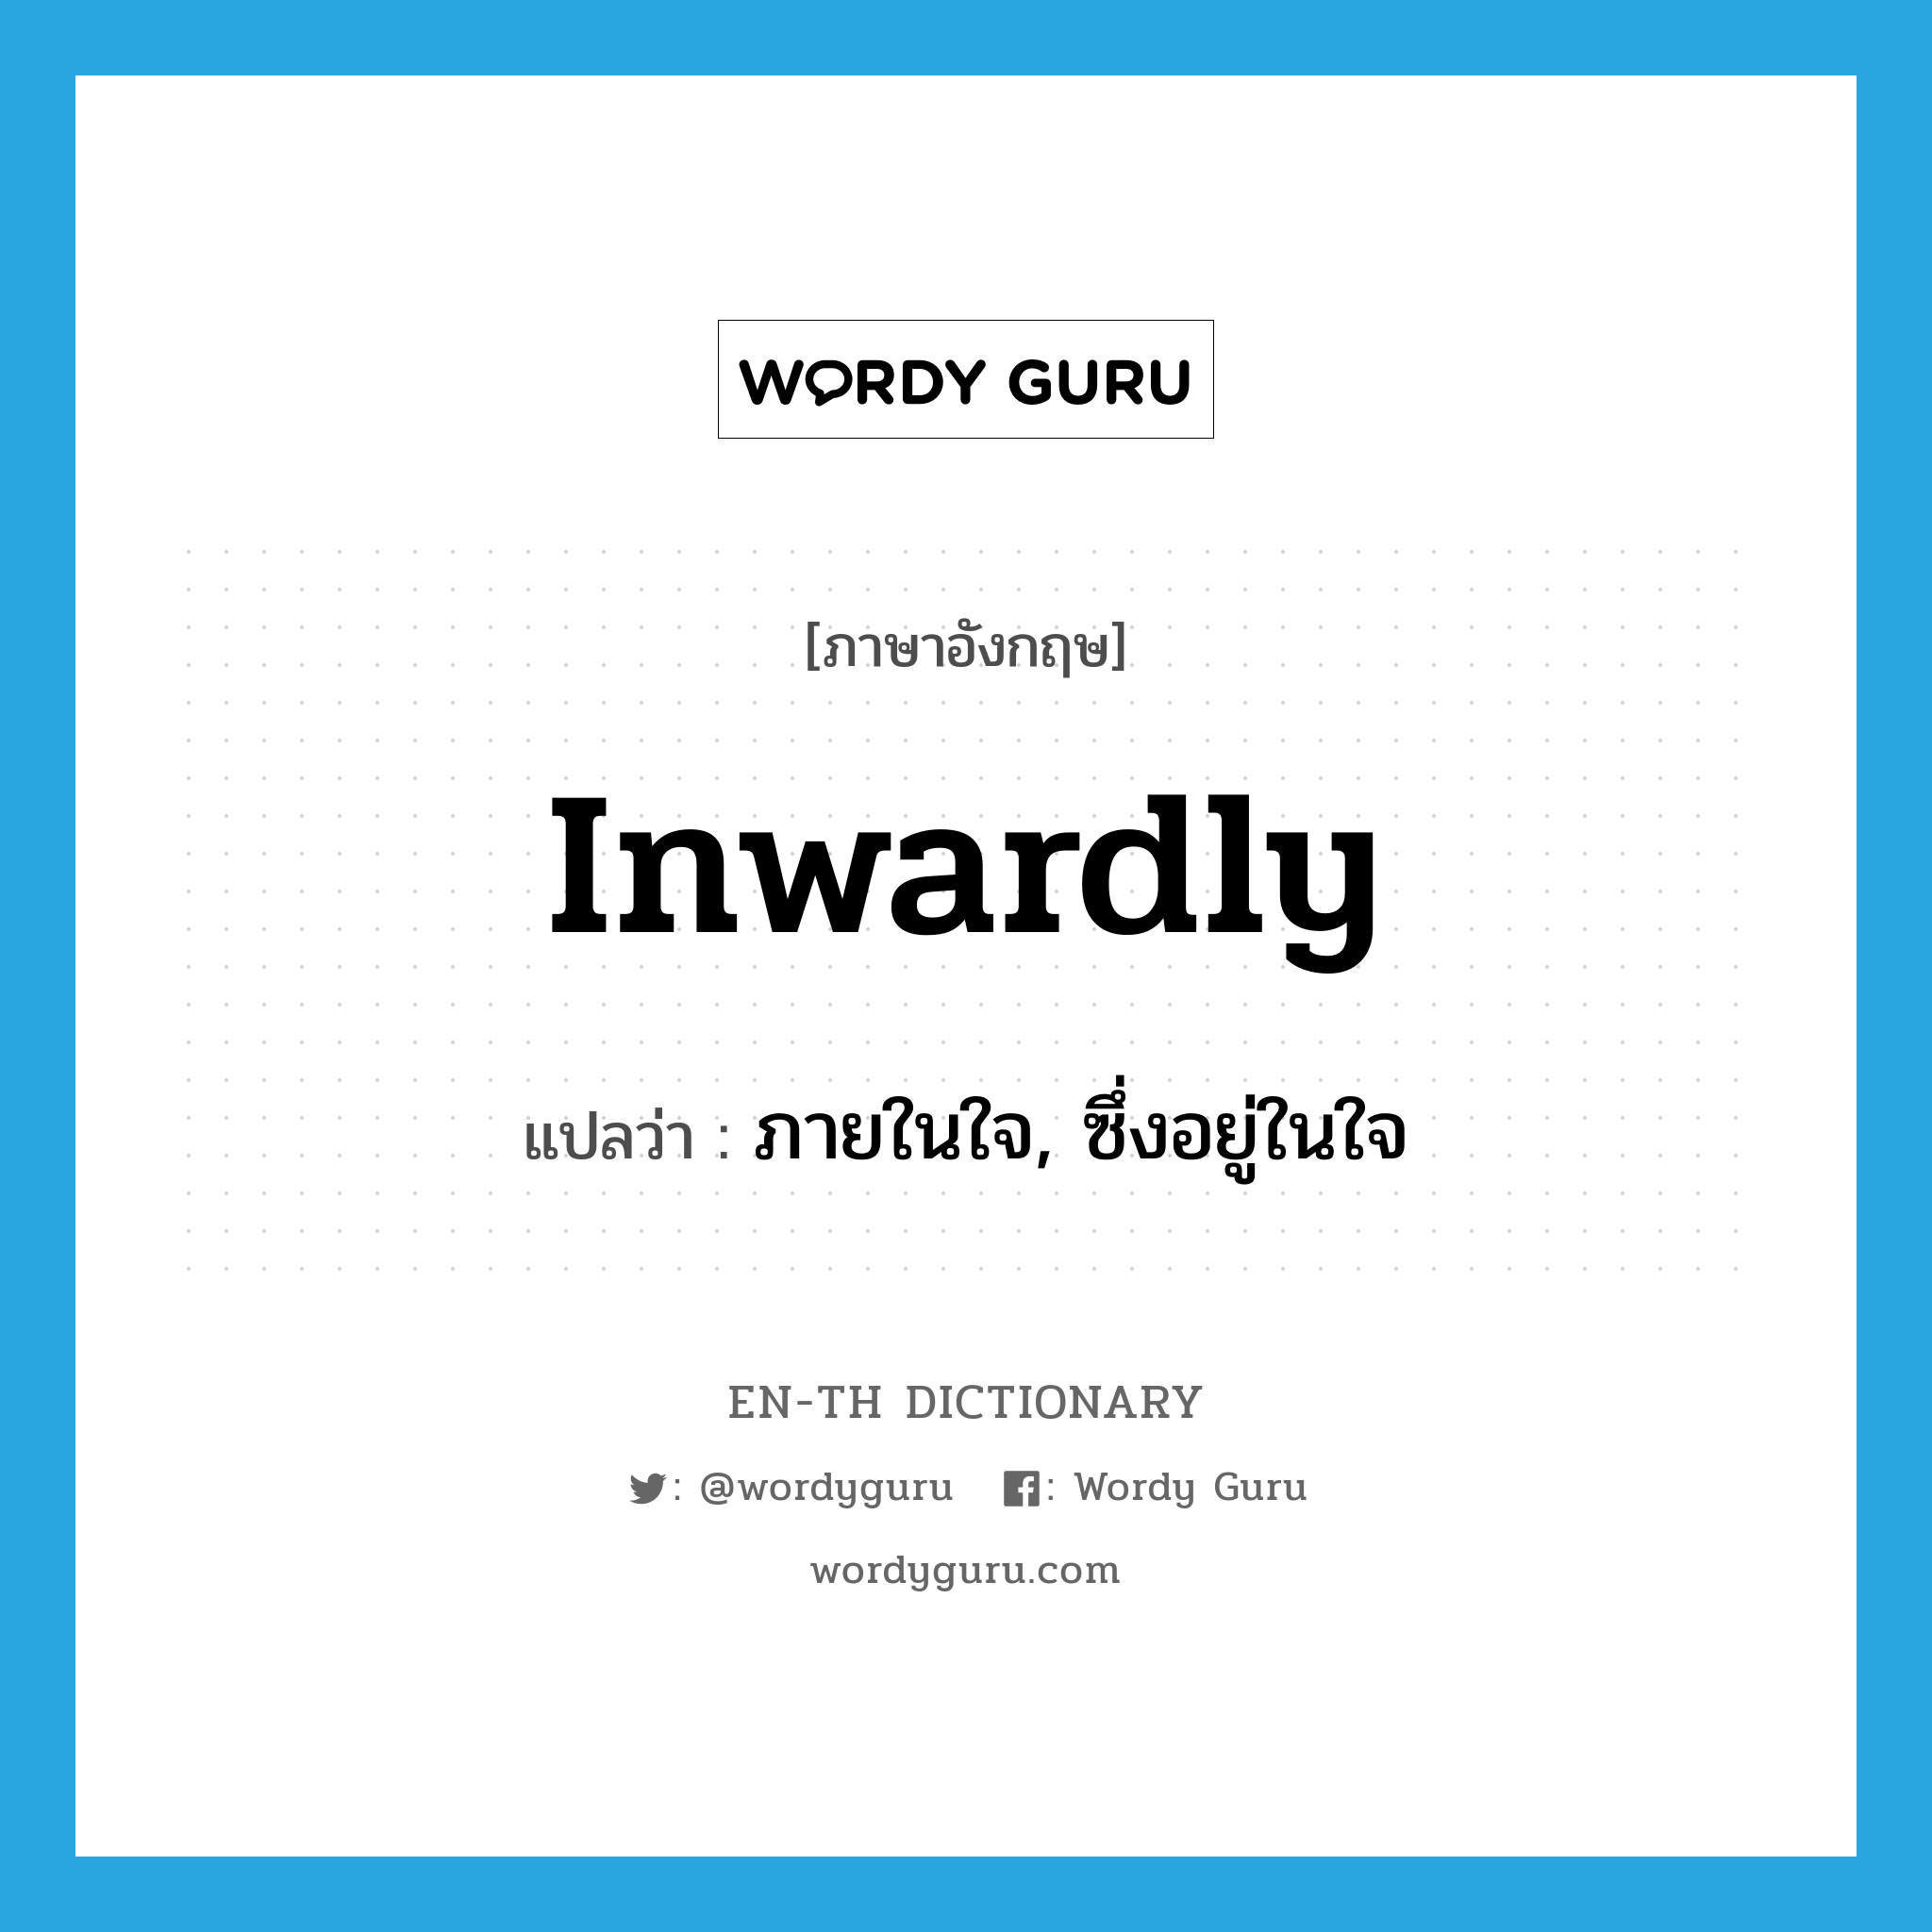 inwardly